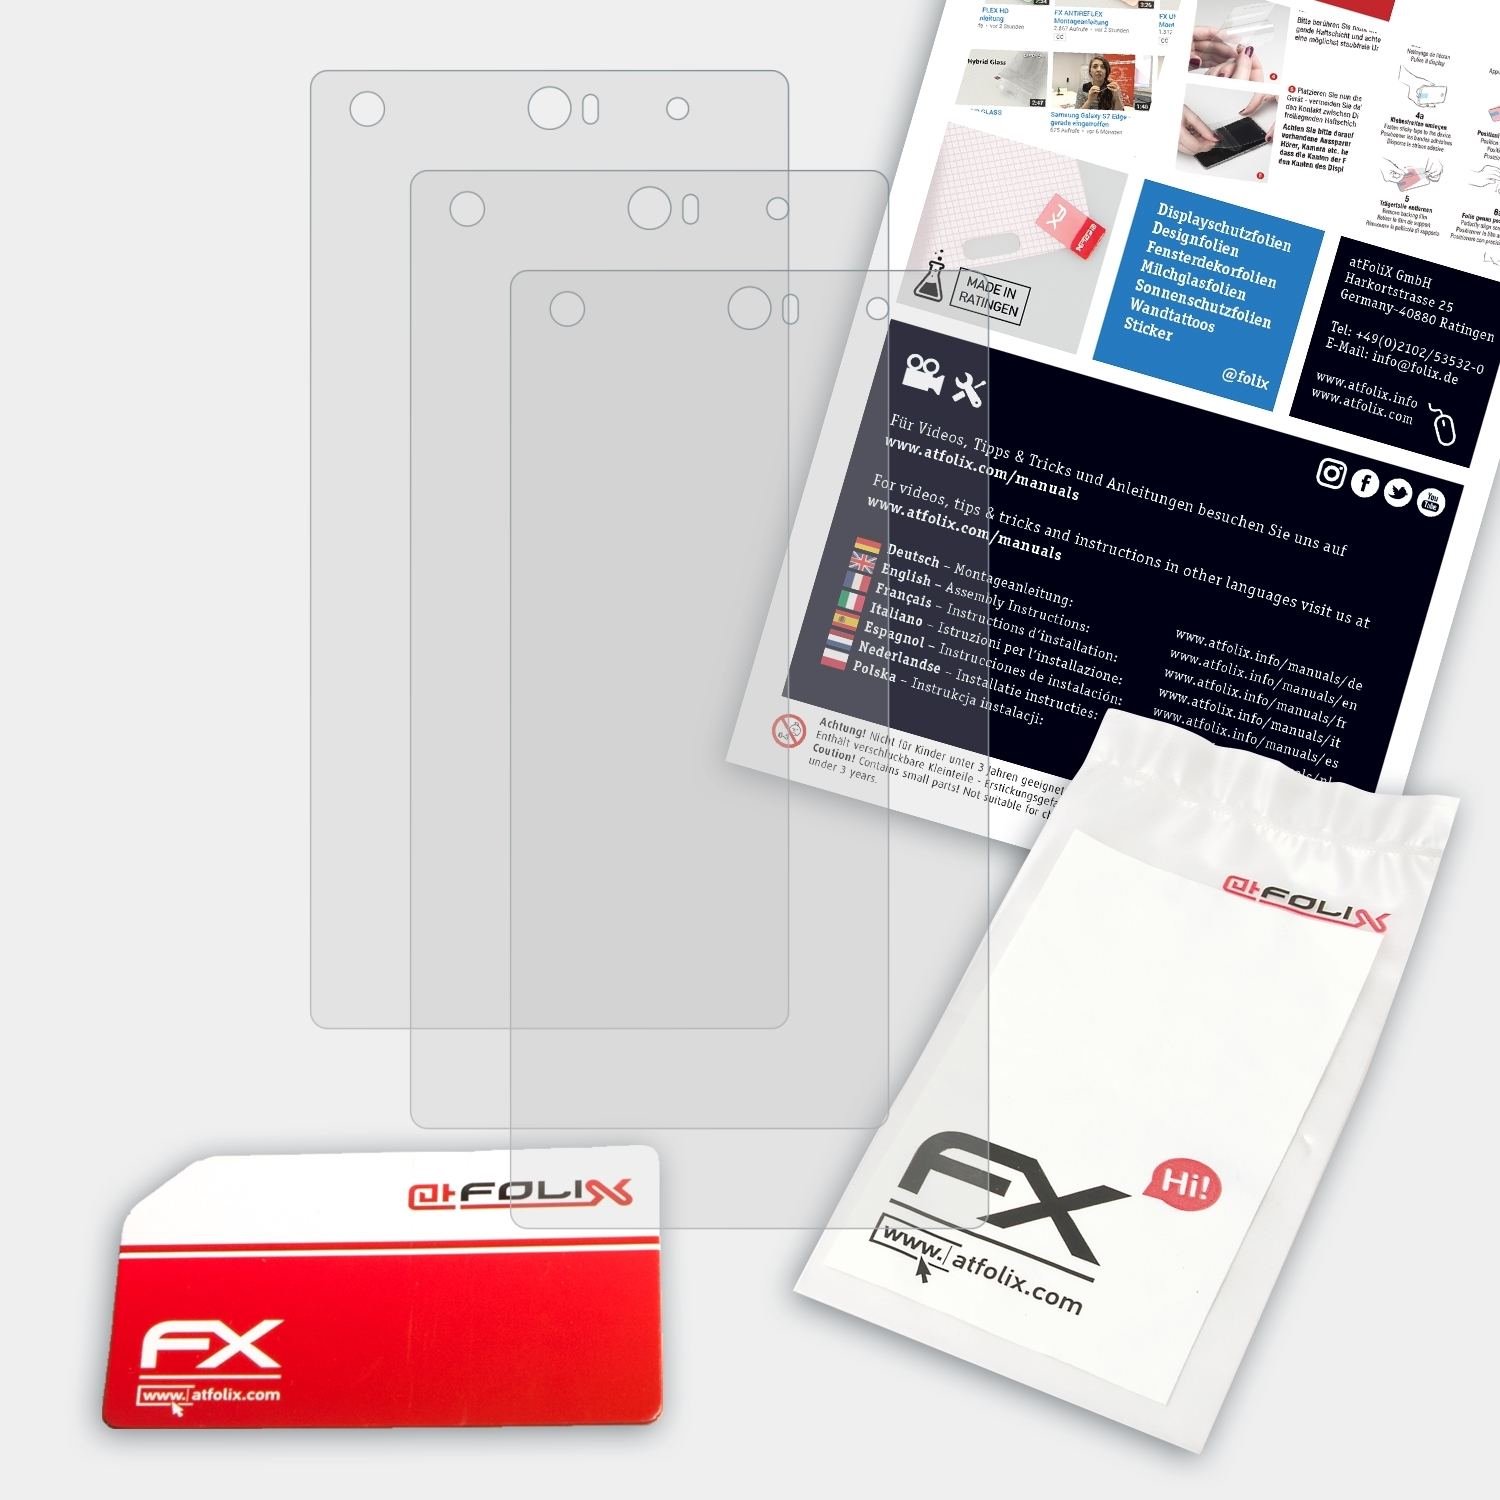 ATFOLIX 3x FX-Antireflex Liquid X2) Acer Displayschutz(für